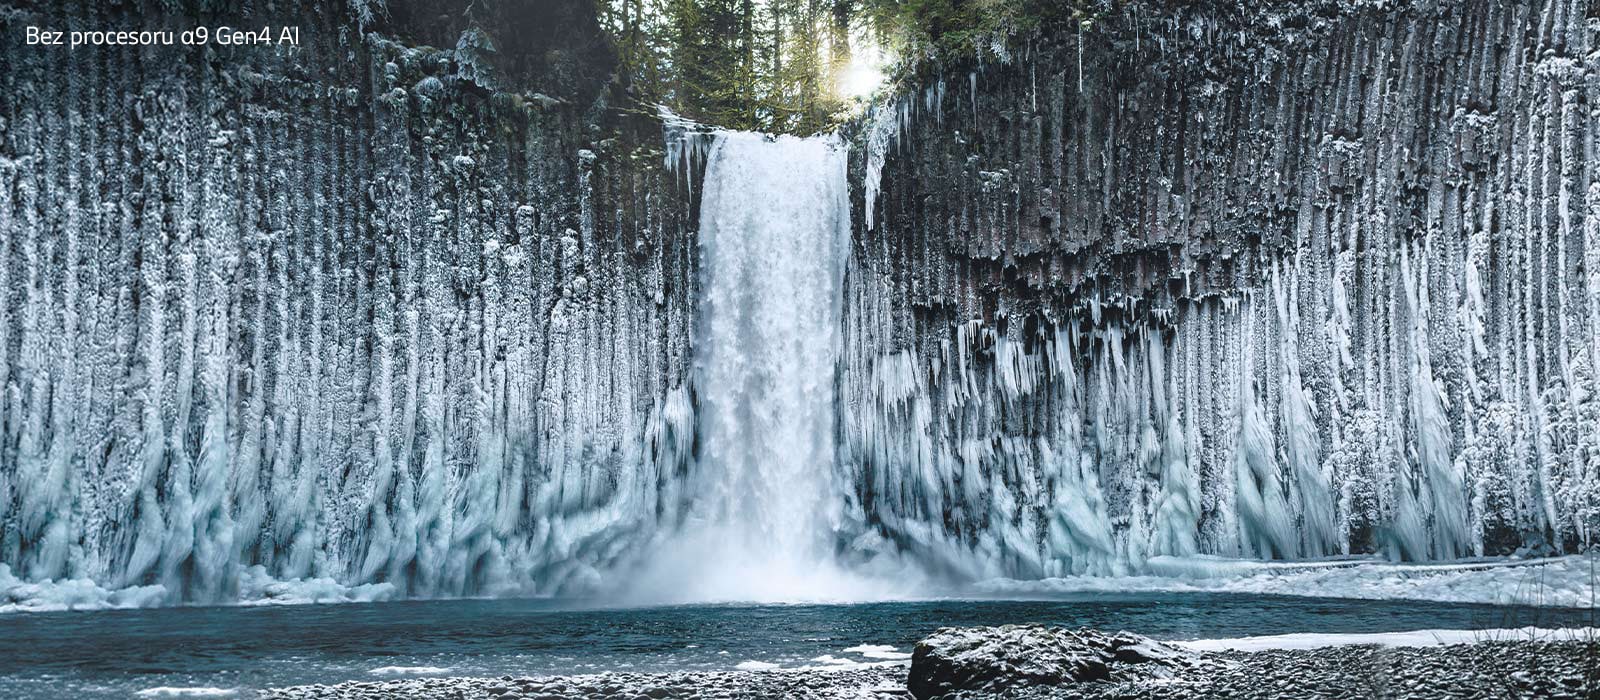 Porovnání snímků zmrzlého vodopádu v lese z hlediska kvality obrazu.